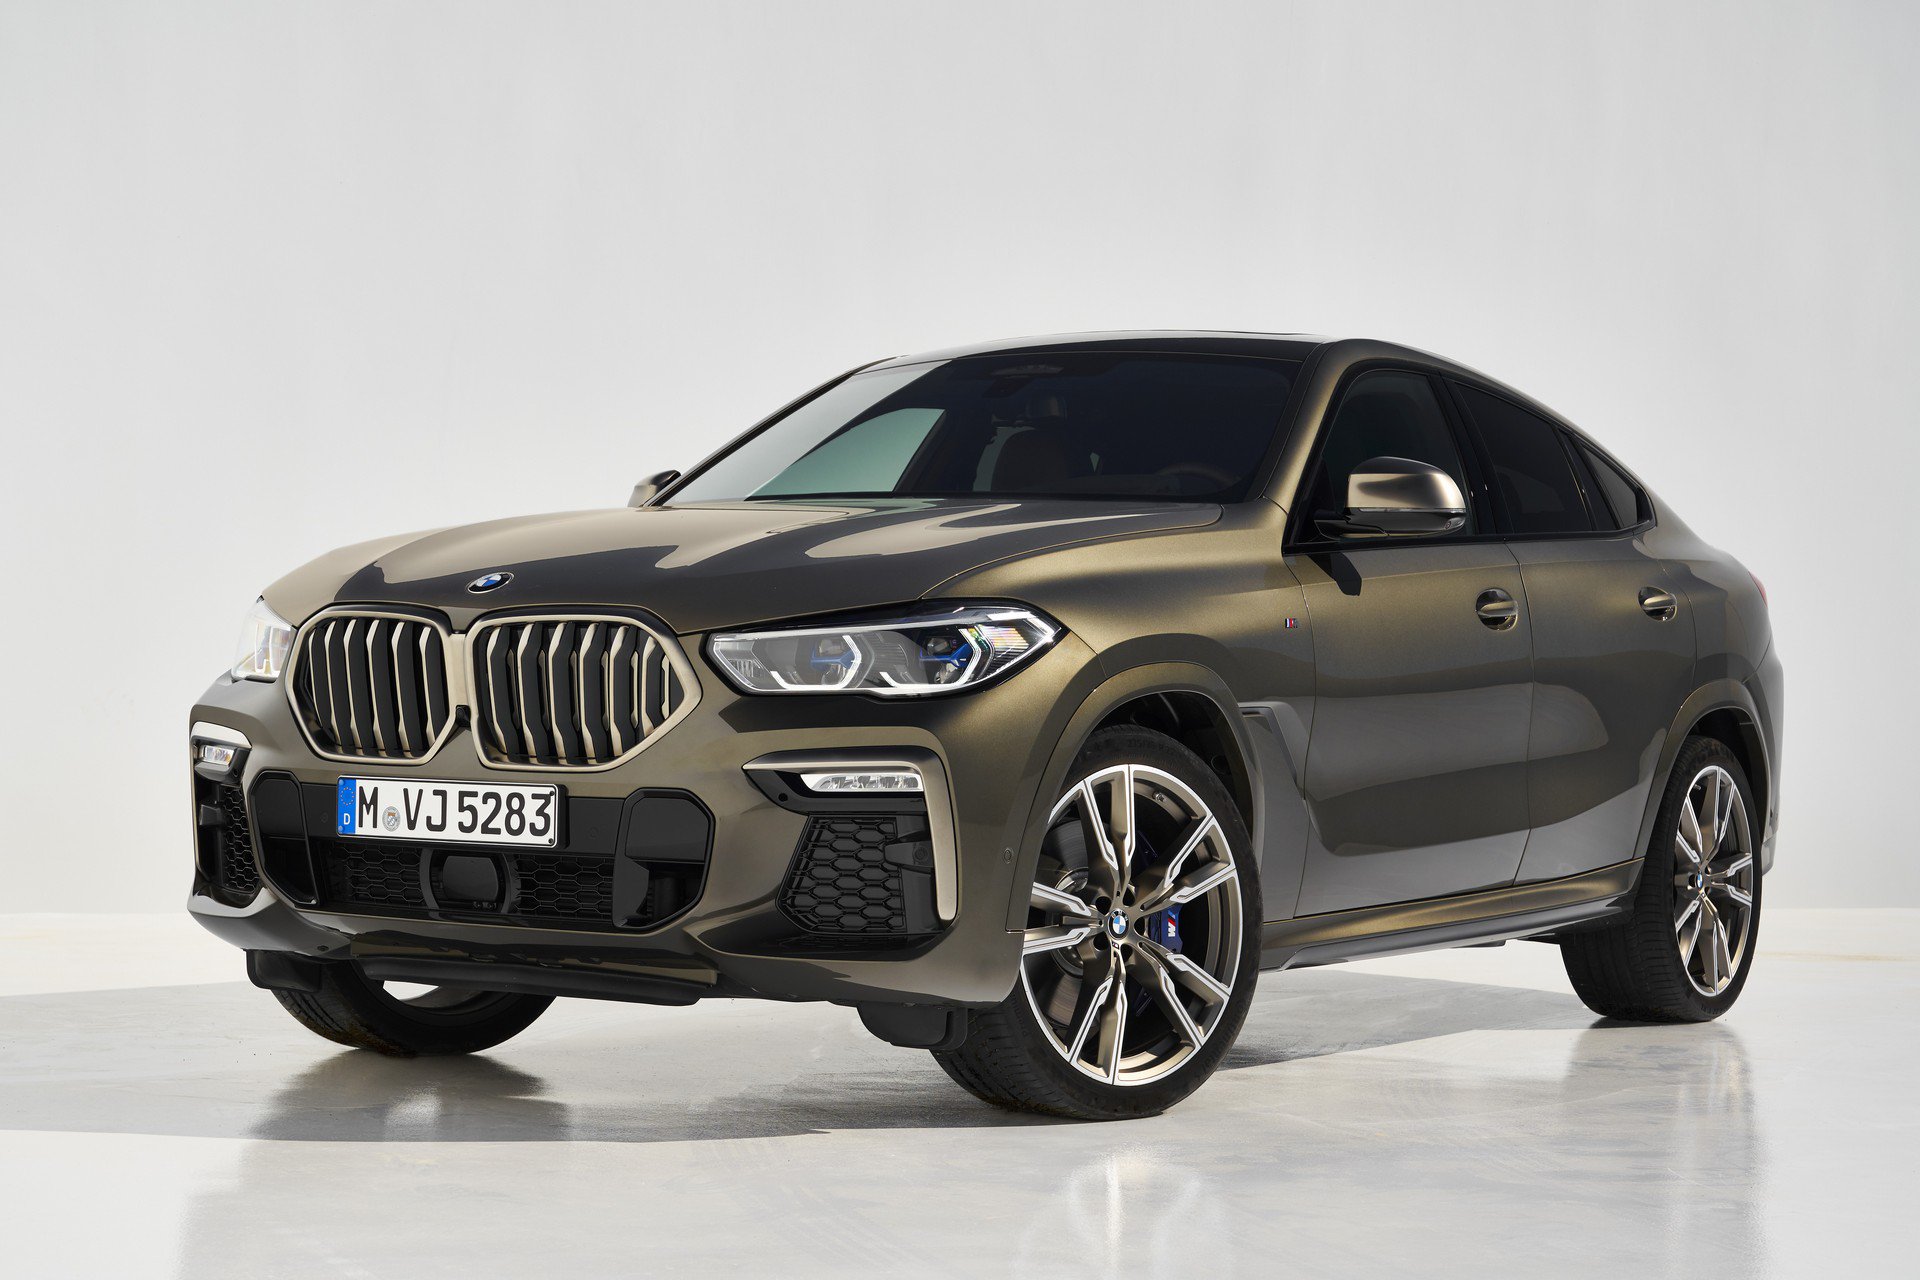 2019 BMW X6, aydınlatmalı ızgara gibi ilginç özellikleriyle tanıtıldı